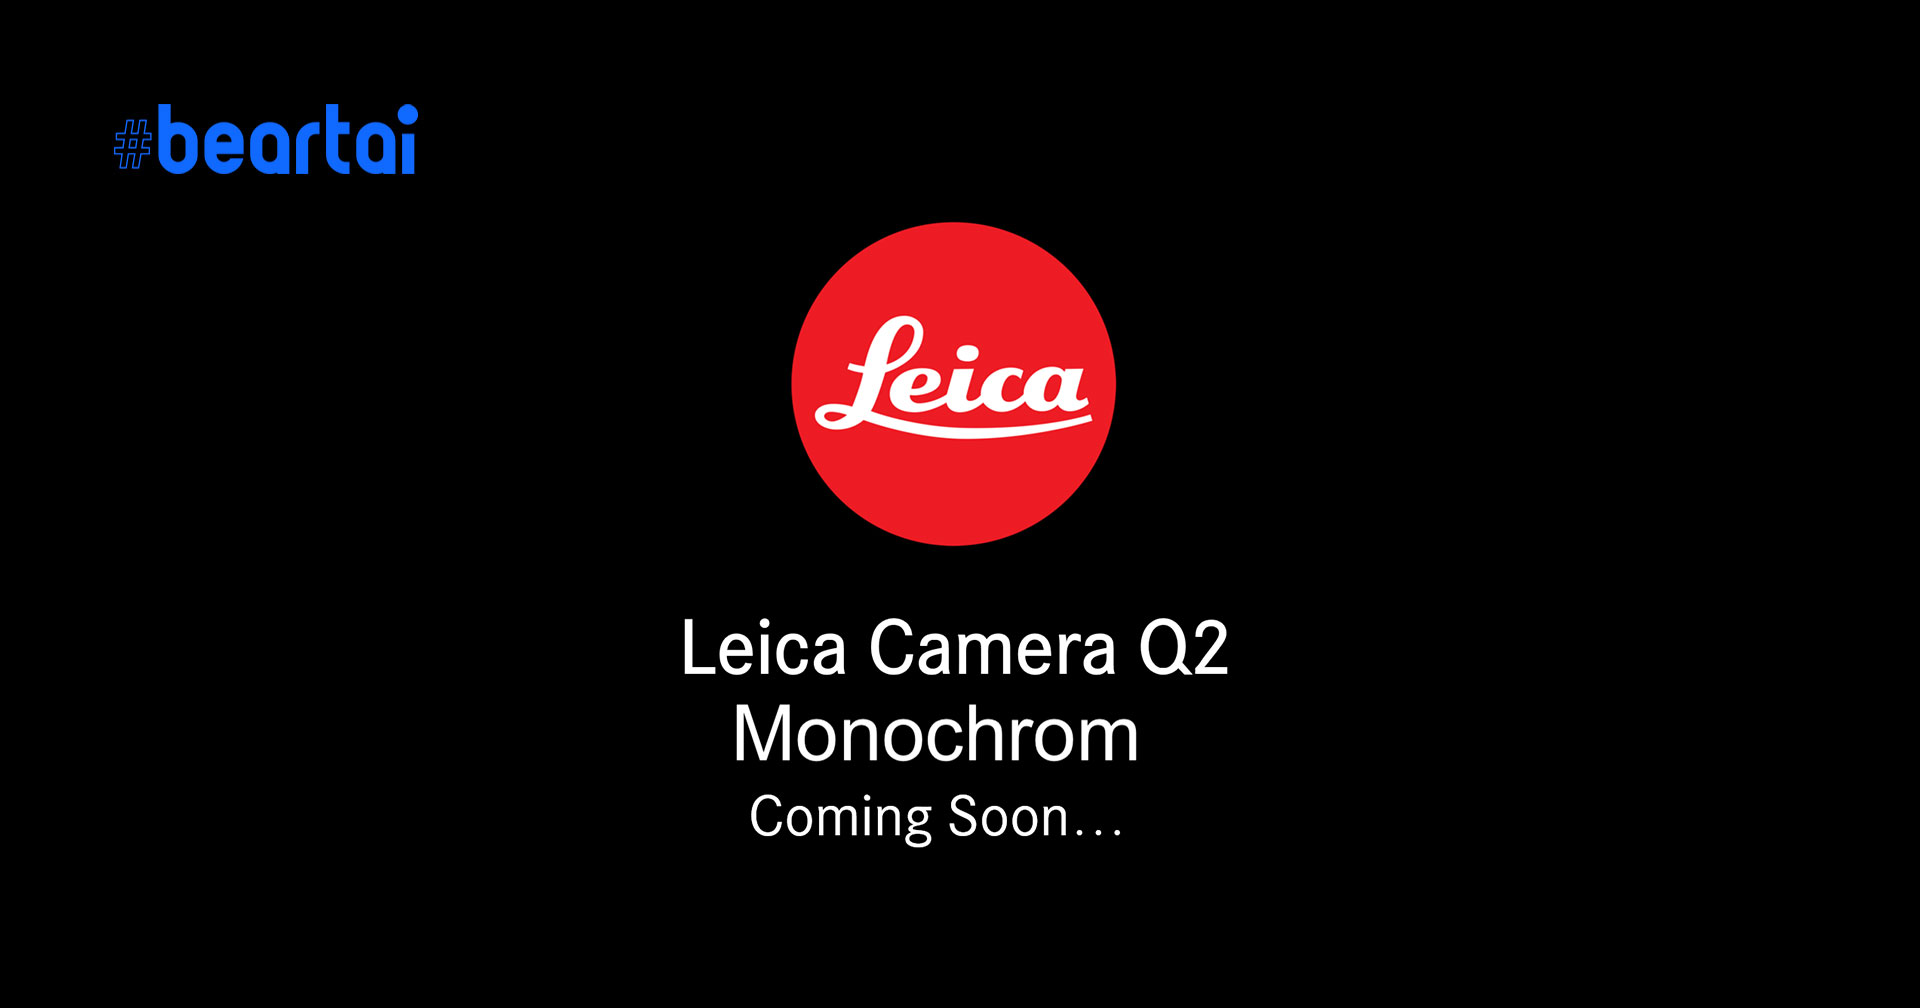 มาแน่! กล้อง Leica Q2 Monochrom เตรียมเปิดตัวในเดือนหน้า